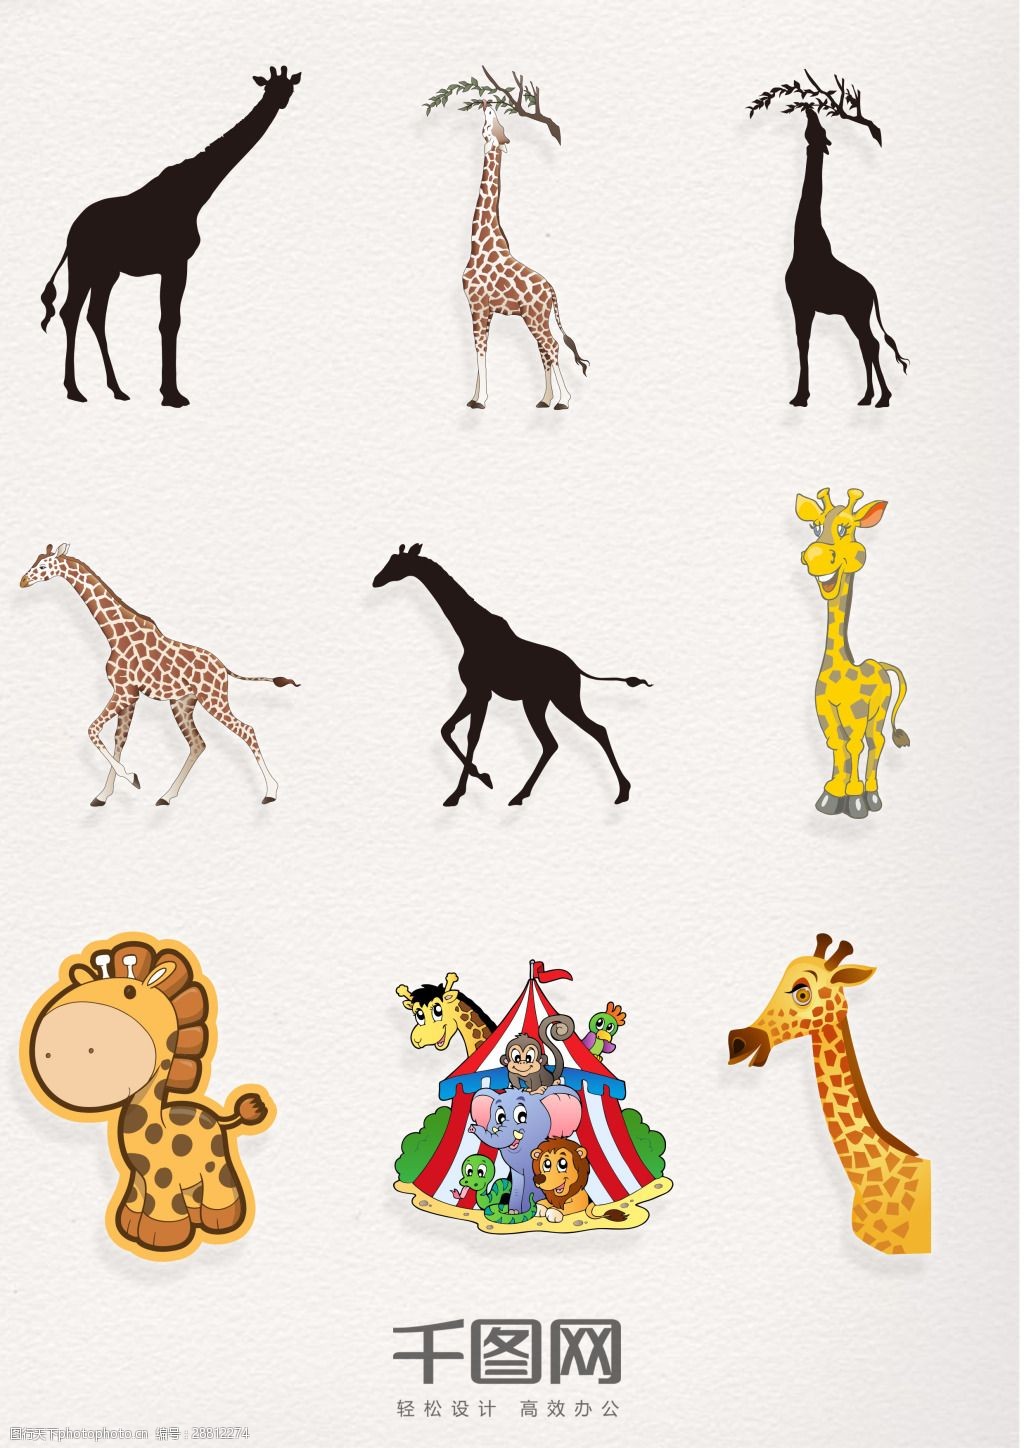 关键词:9款可爱长颈鹿卡通素材 剪影 黑白 马戏团 动物园 可爱 黄色